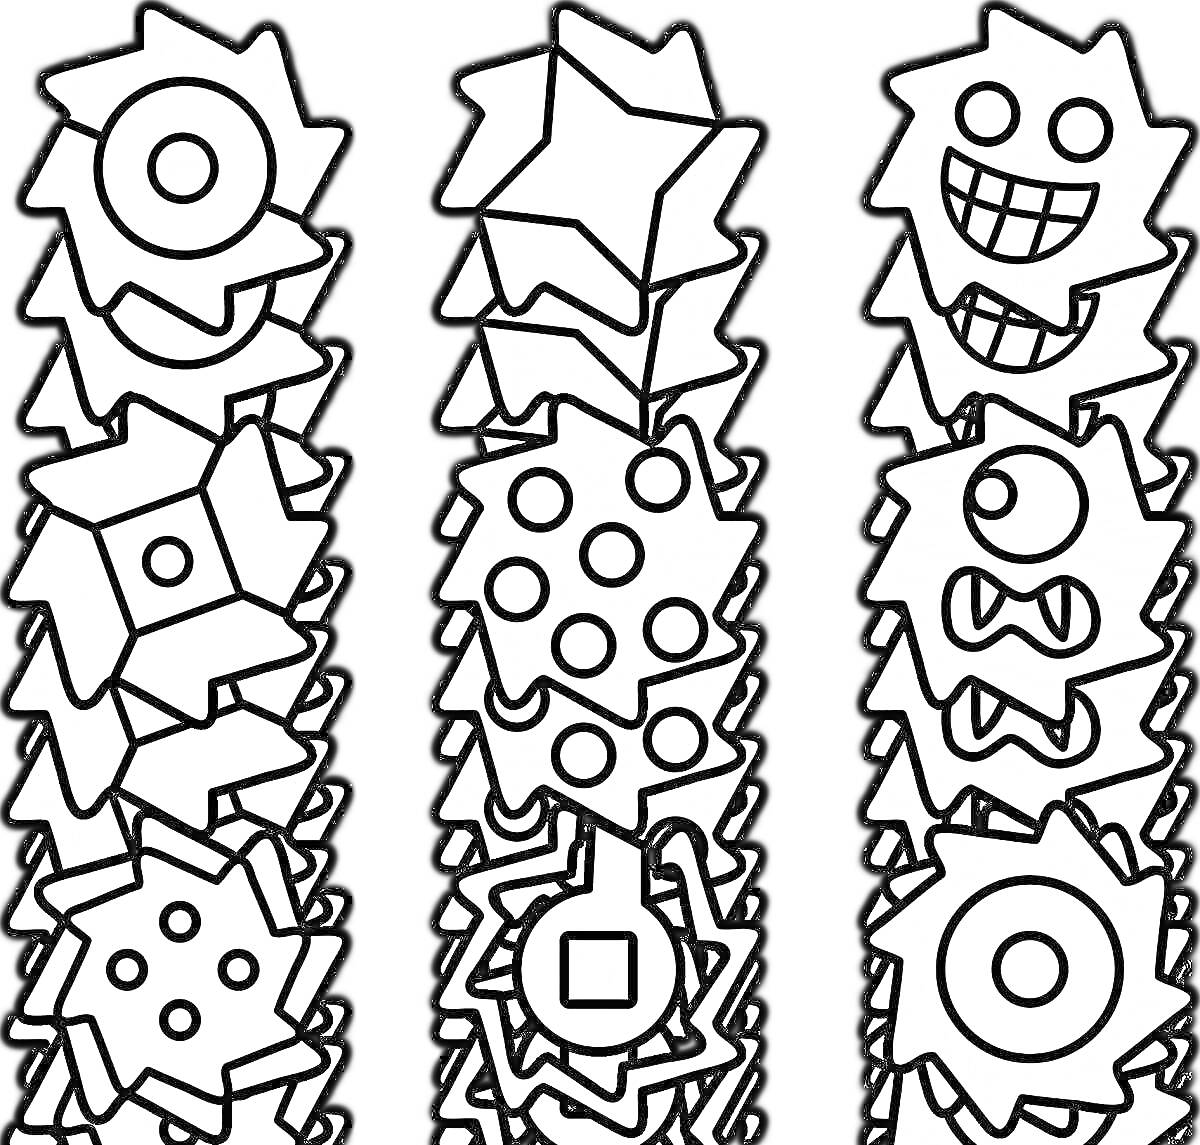 Раскраска Разнообразные шестеренки из Geometry Dash с разными формами и выражениями лиц